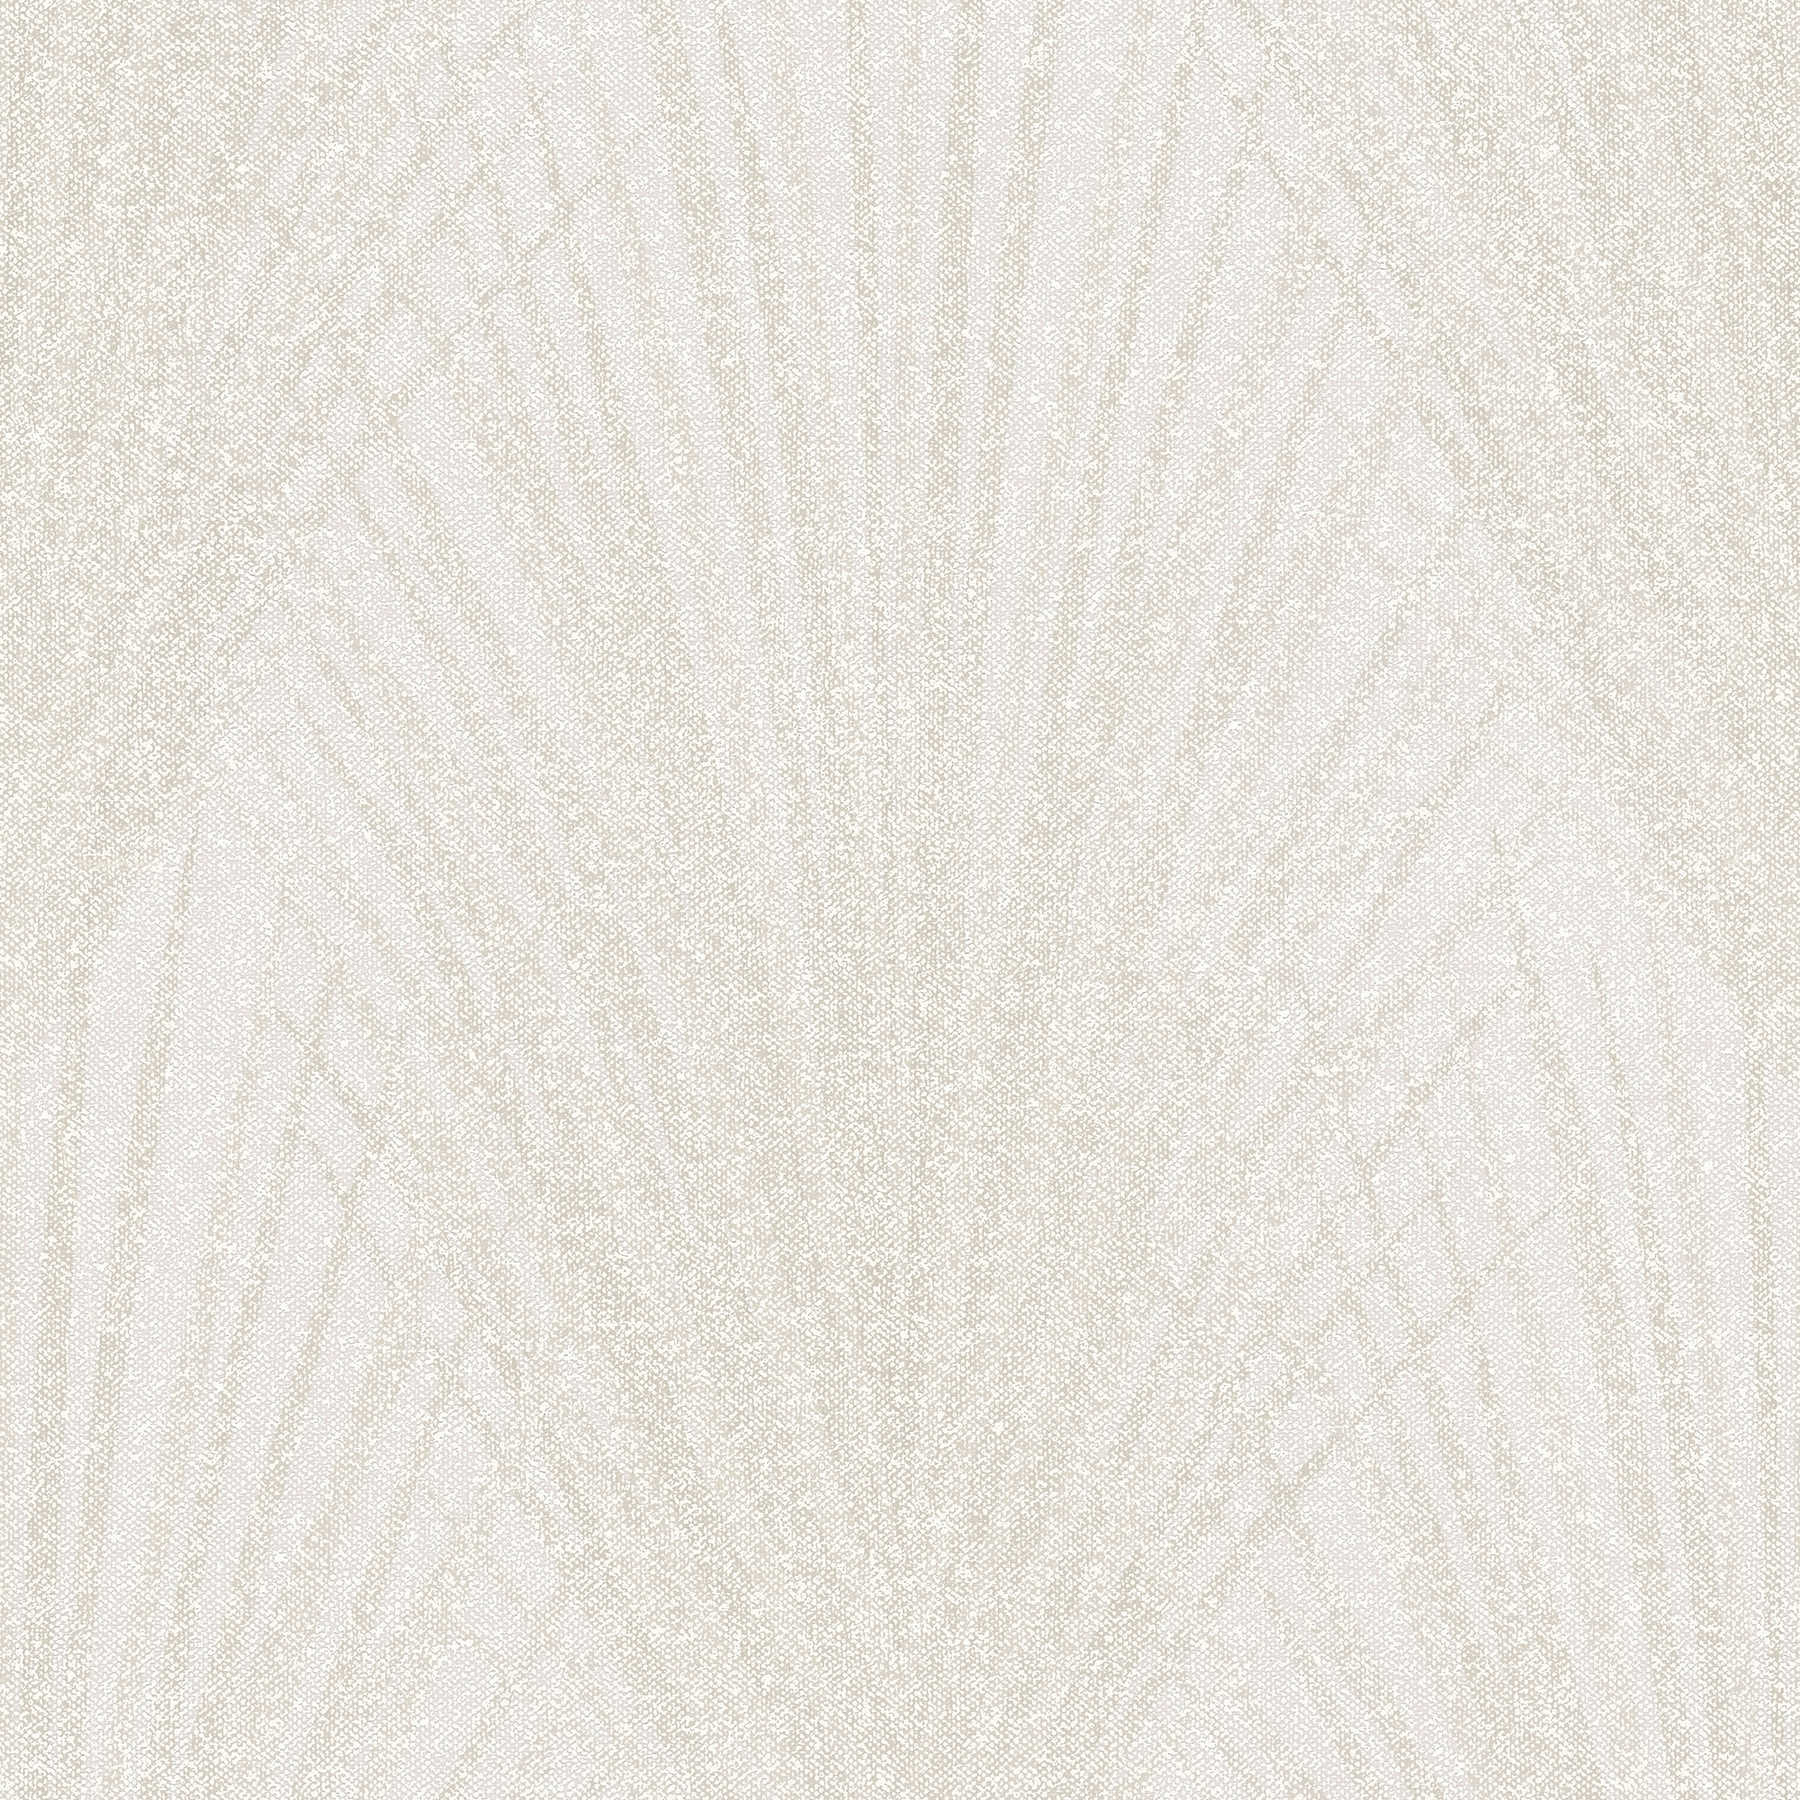 Farnblatt Mustertapete abstraktes Design – Creme, Beige
